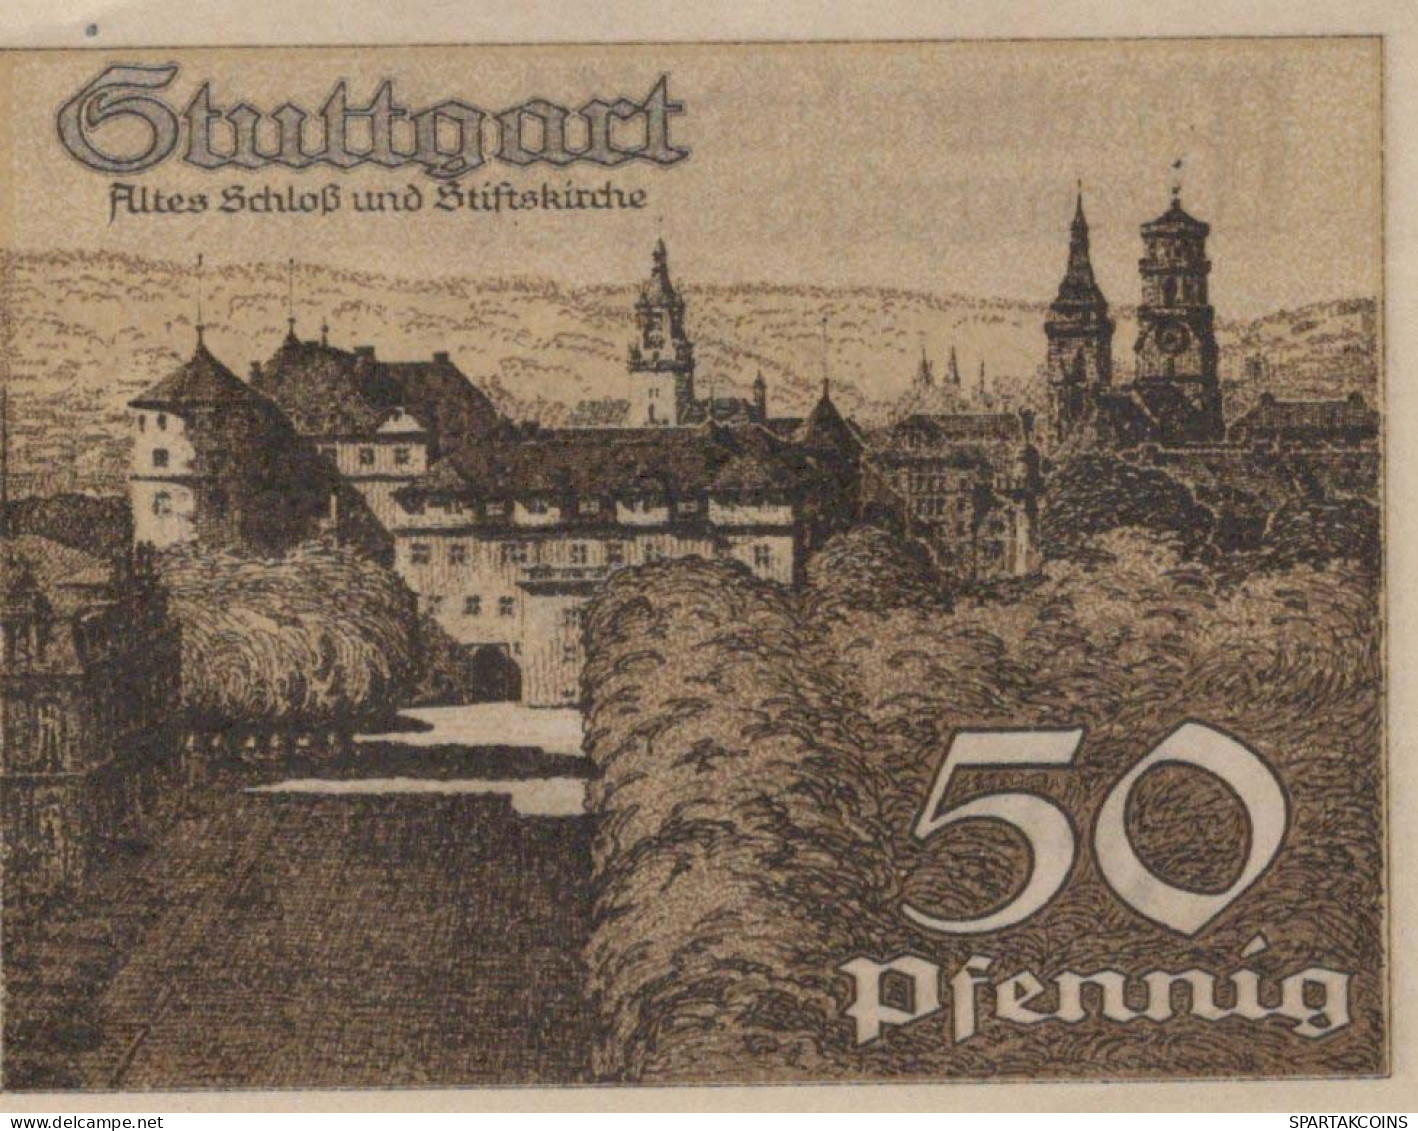 50 PFENNIG 1921 Stadt STUTTGART Württemberg UNC DEUTSCHLAND Notgeld #PC426 - [11] Emissions Locales